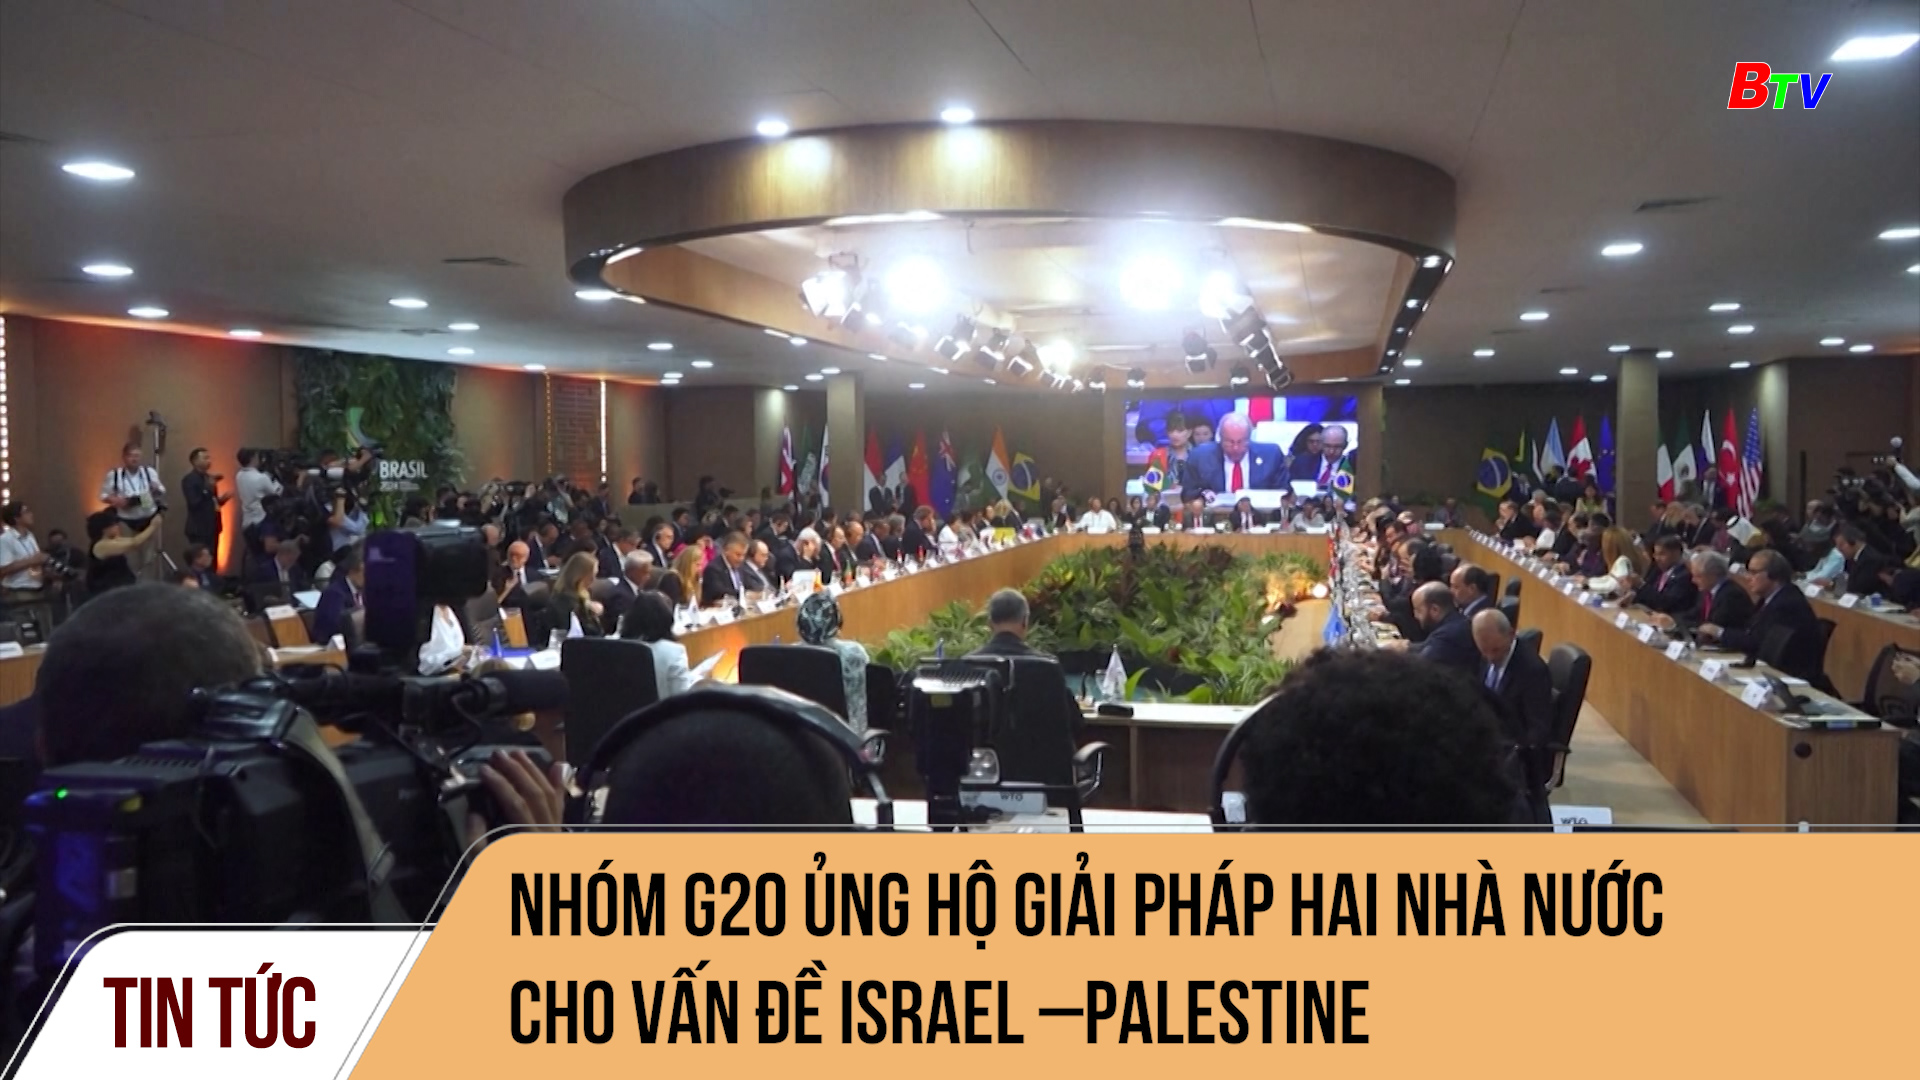 Nhóm G20 ủng hộ giải pháp hai nhà nước cho vấn đề Israel–Palestine